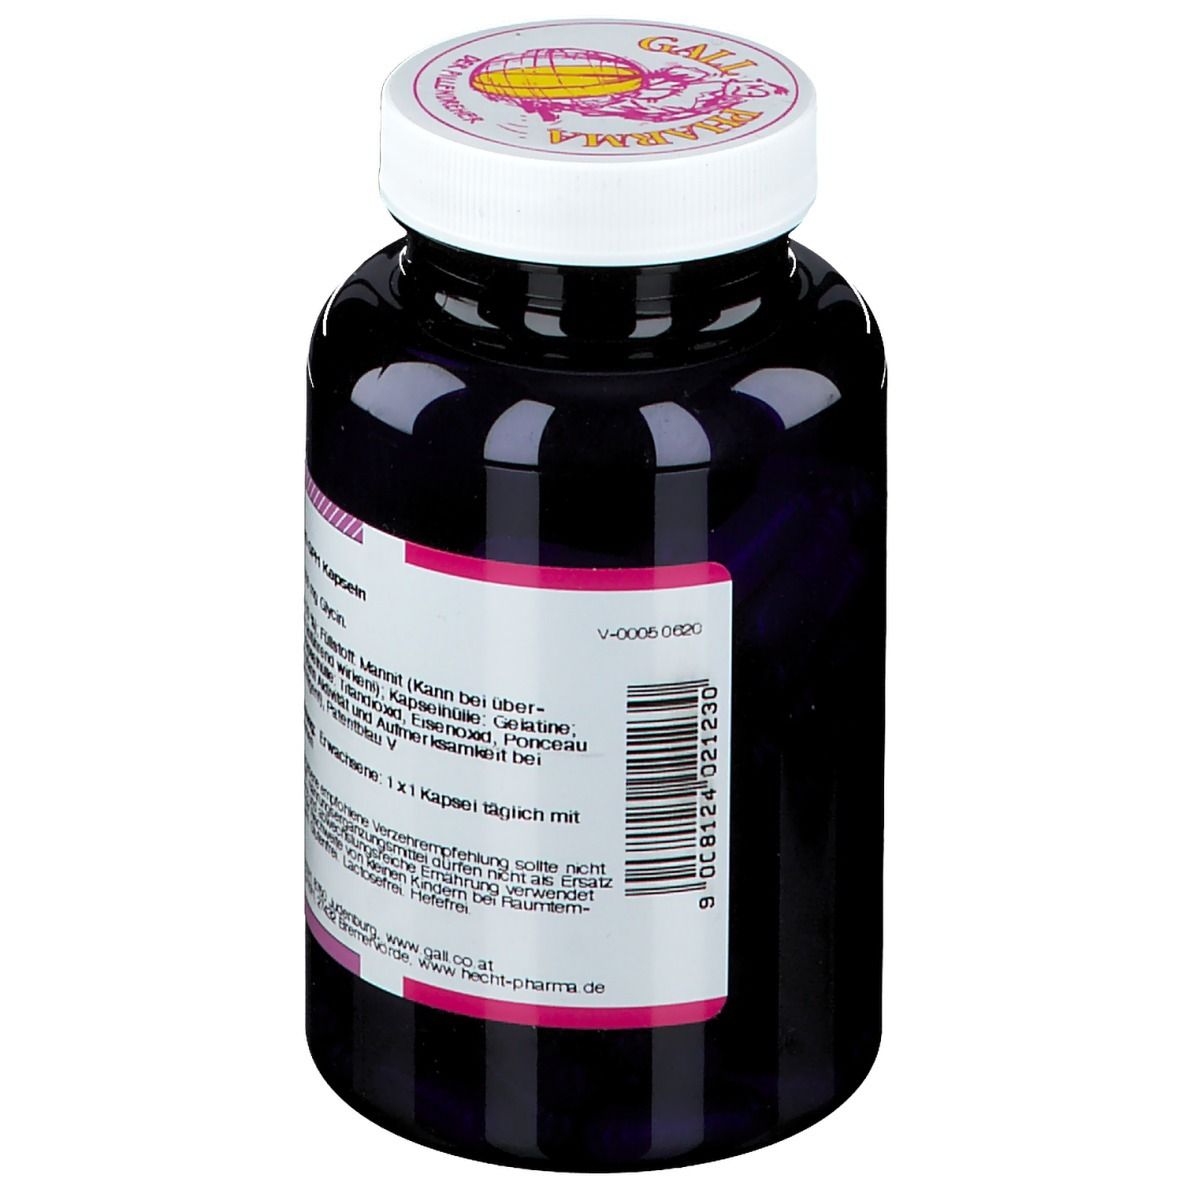 GALL PHARMA Glycin 500 mg GPH